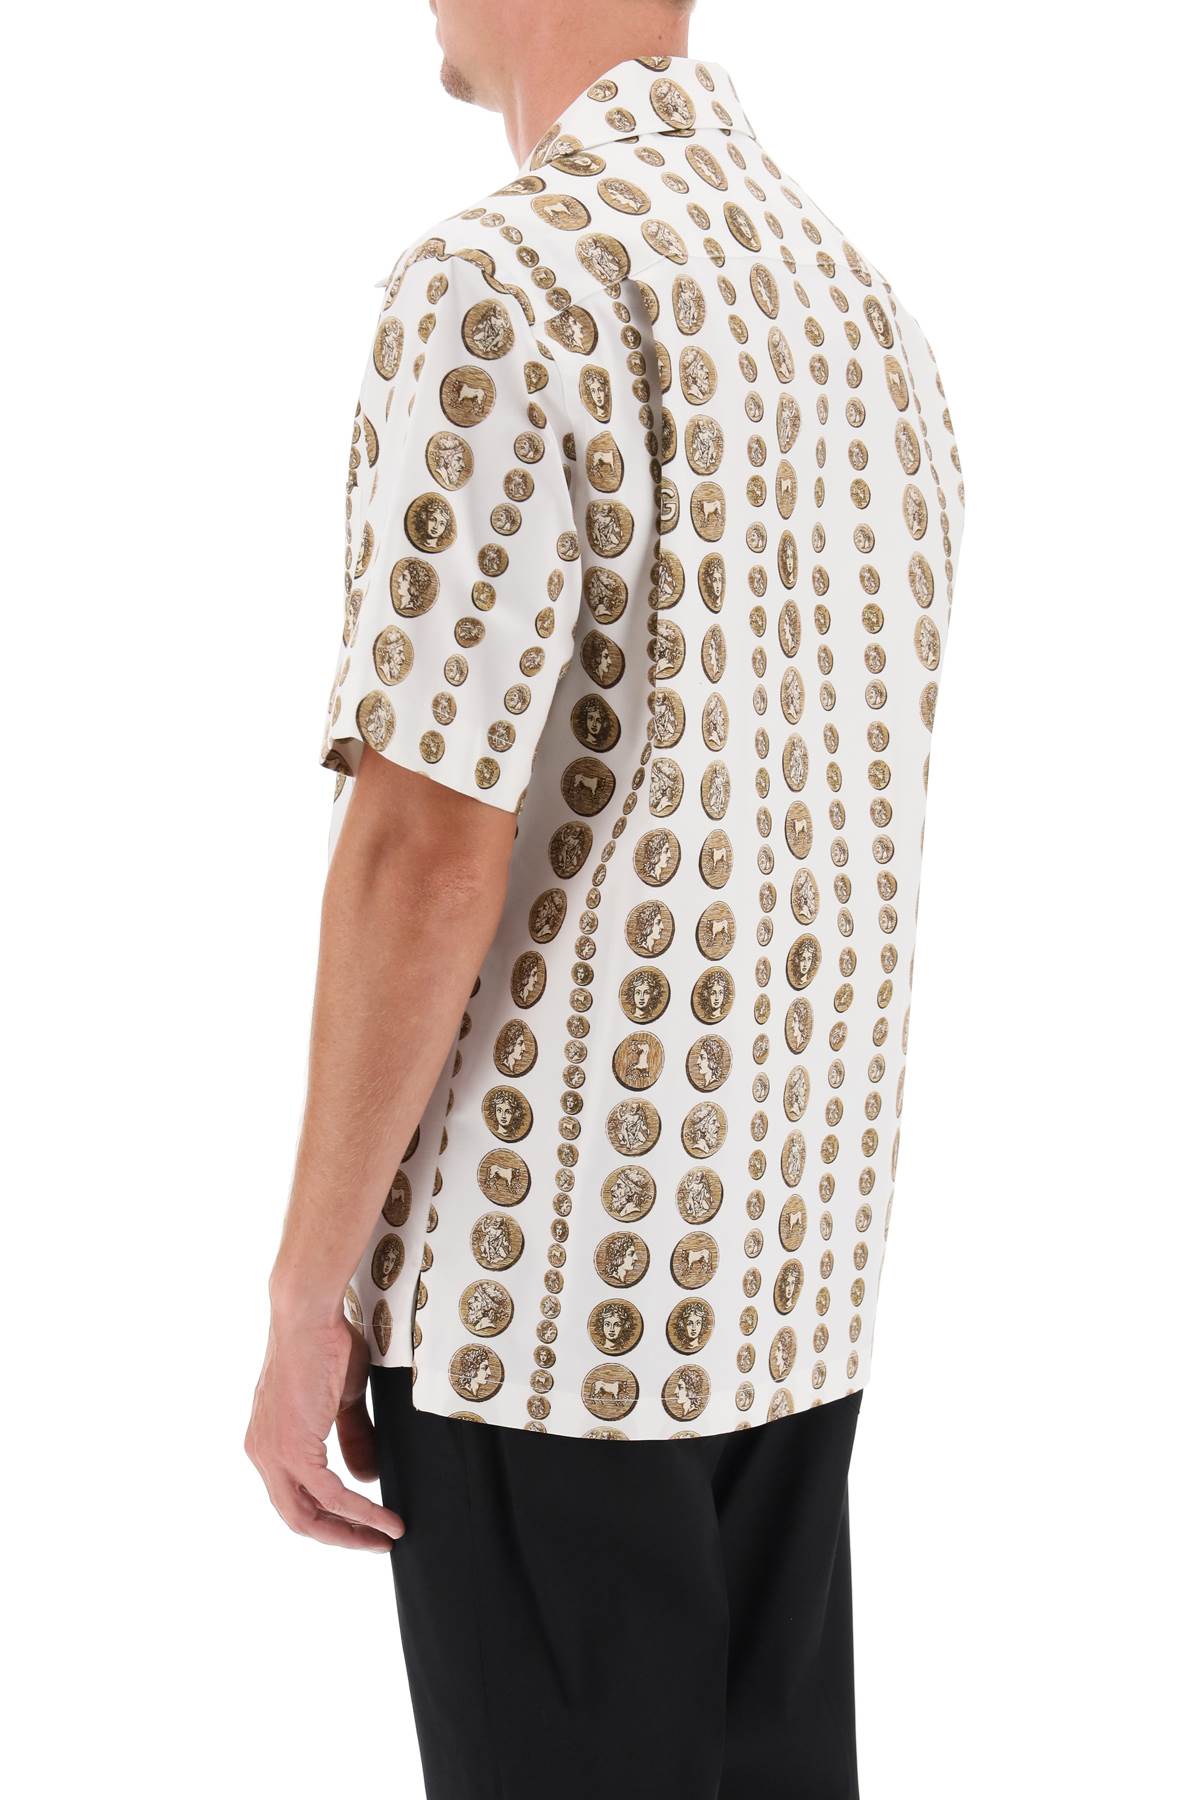 Dolce & gabbana coin print short sleeve shirt-2